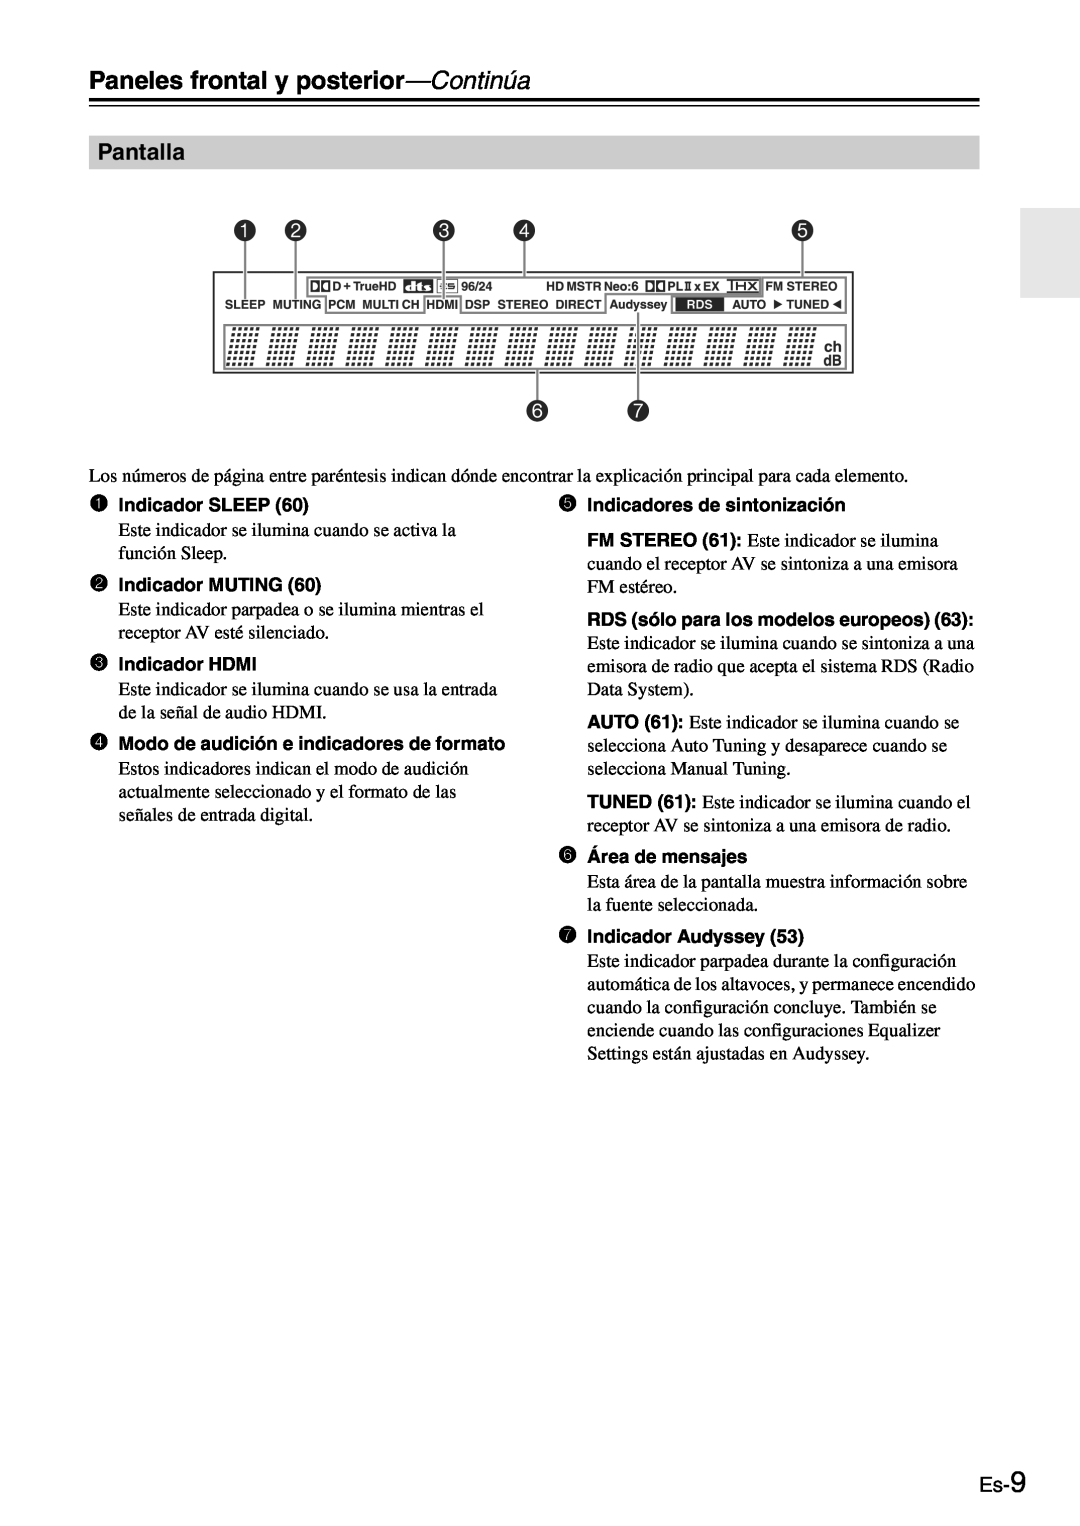 Onkyo TX-SR705 manual Pantalla, Es-9, Paneles frontal y posterior—Continúa 